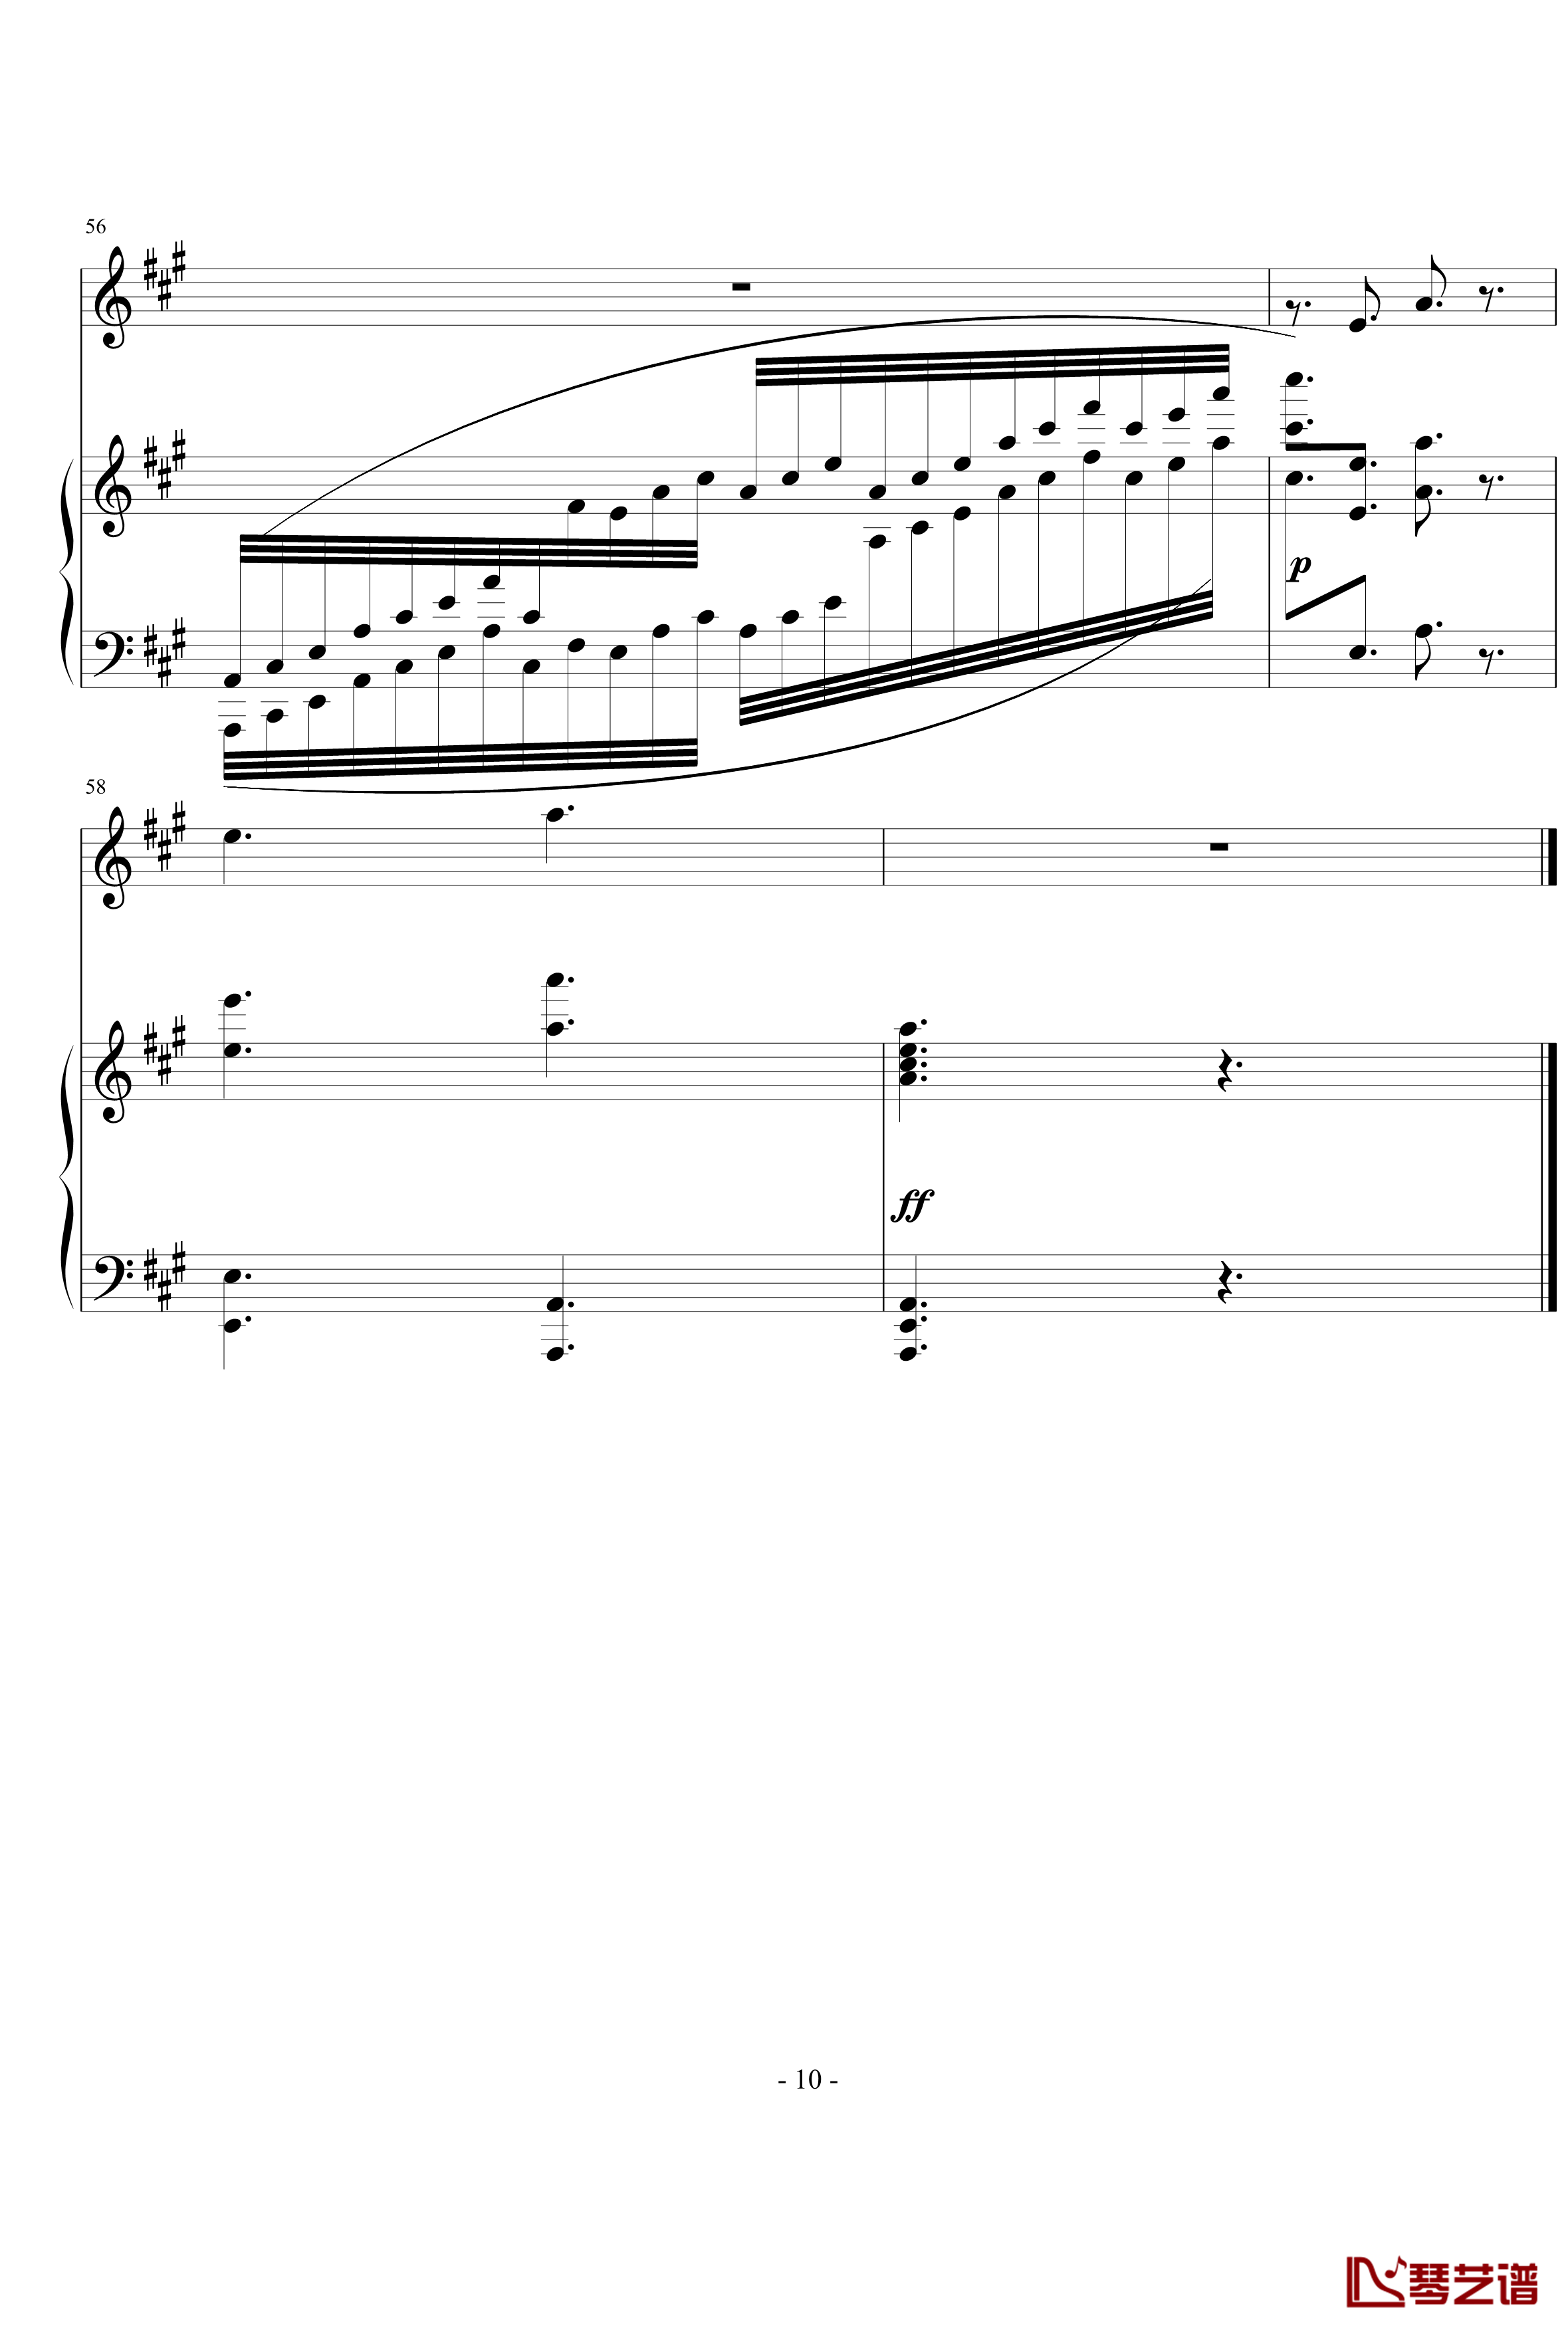 钢琴单簧管小奏鸣曲钢琴谱-nyride10